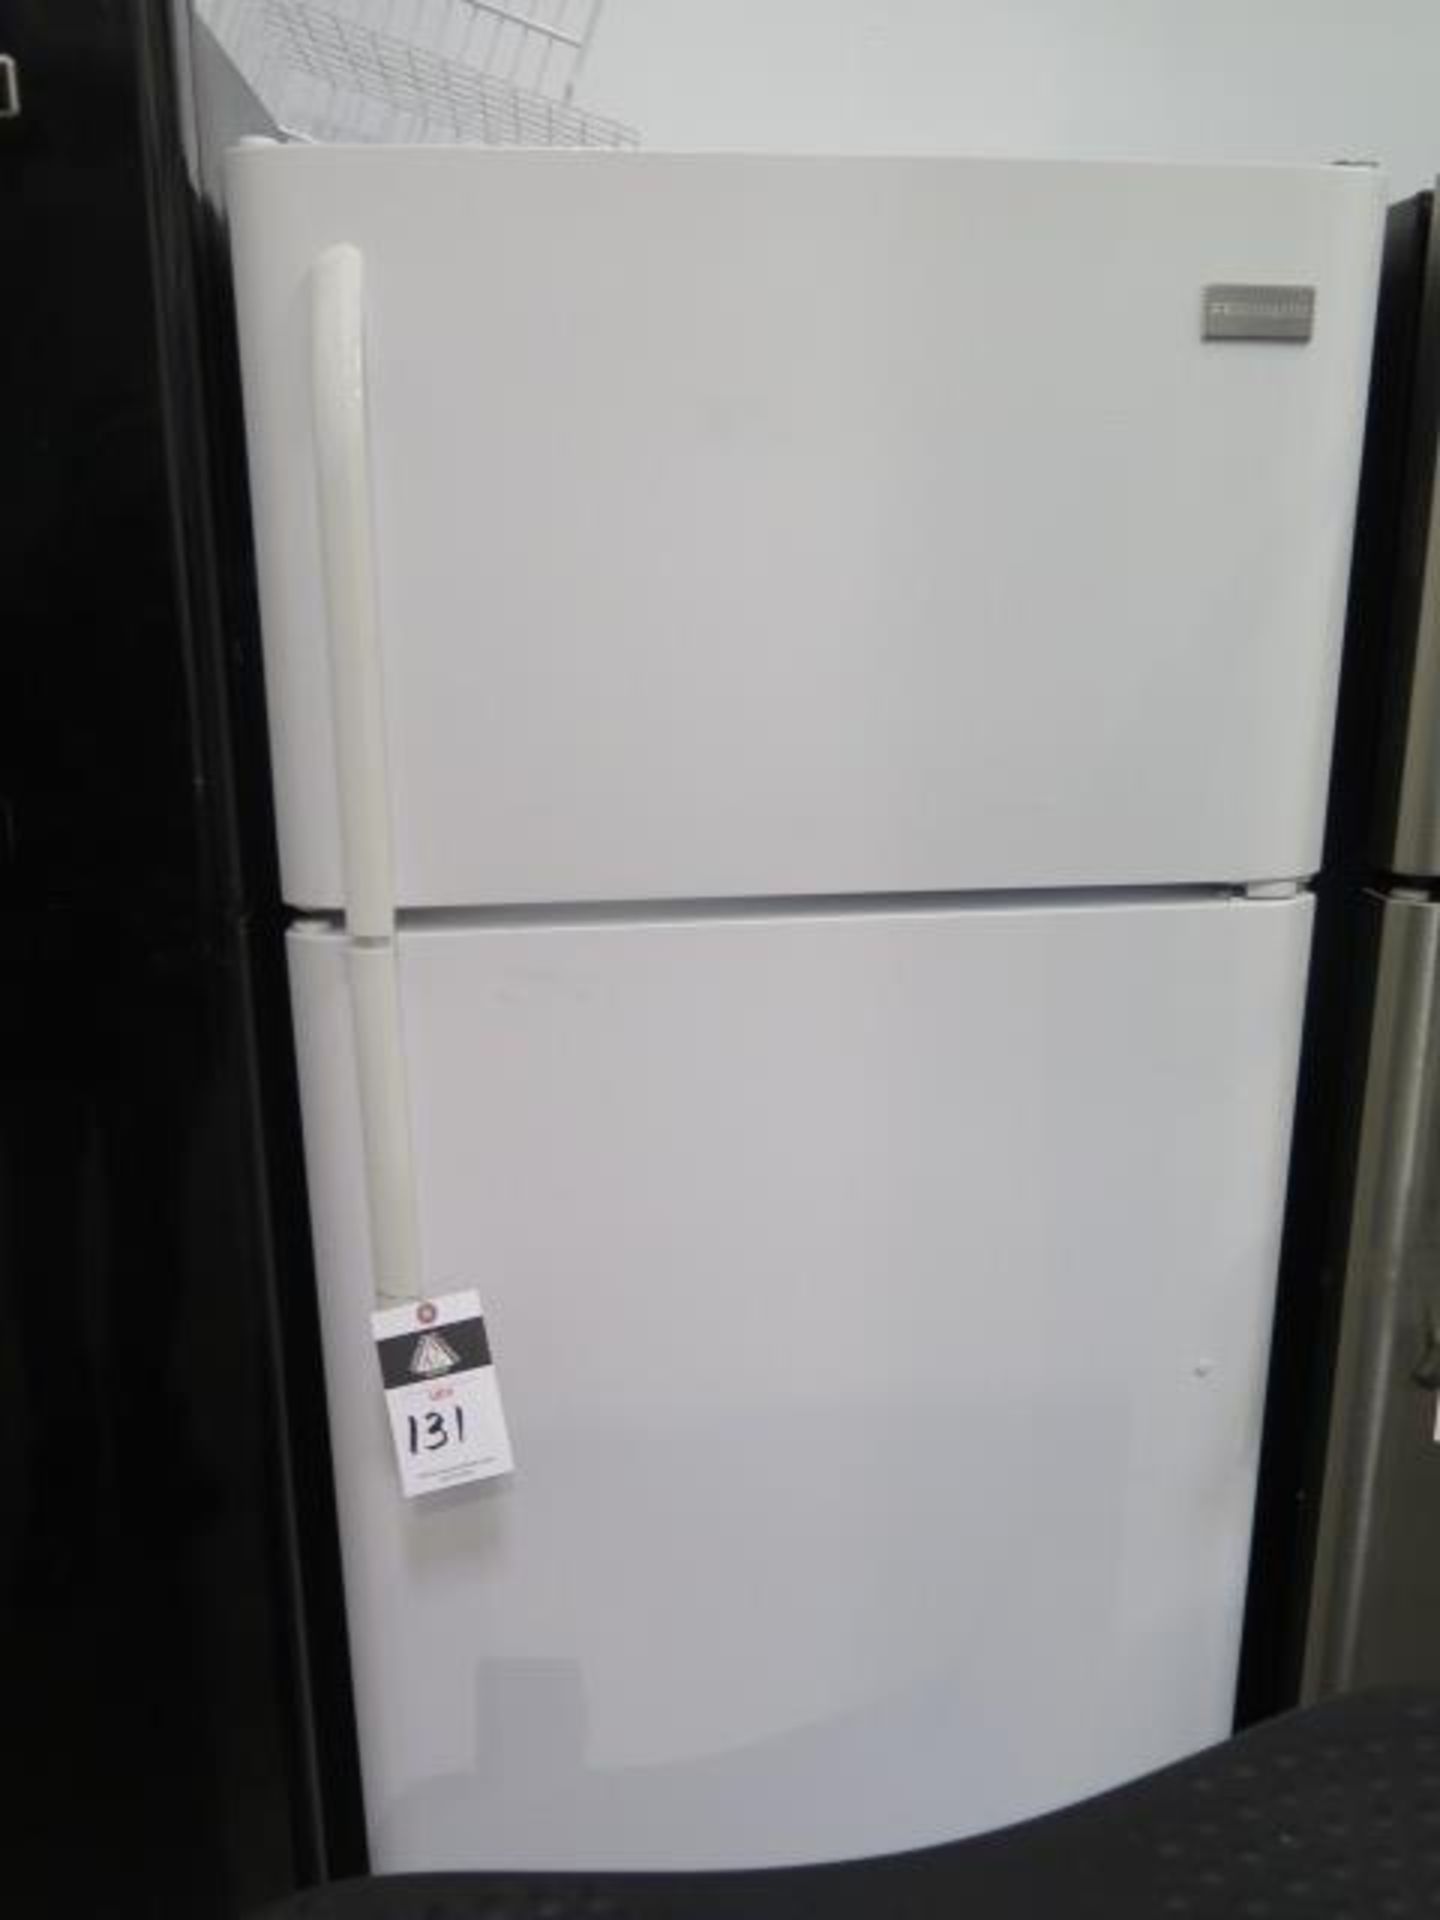 Frigidaire Refrigerator (SOLD AS-IS - NO WARRANTY)